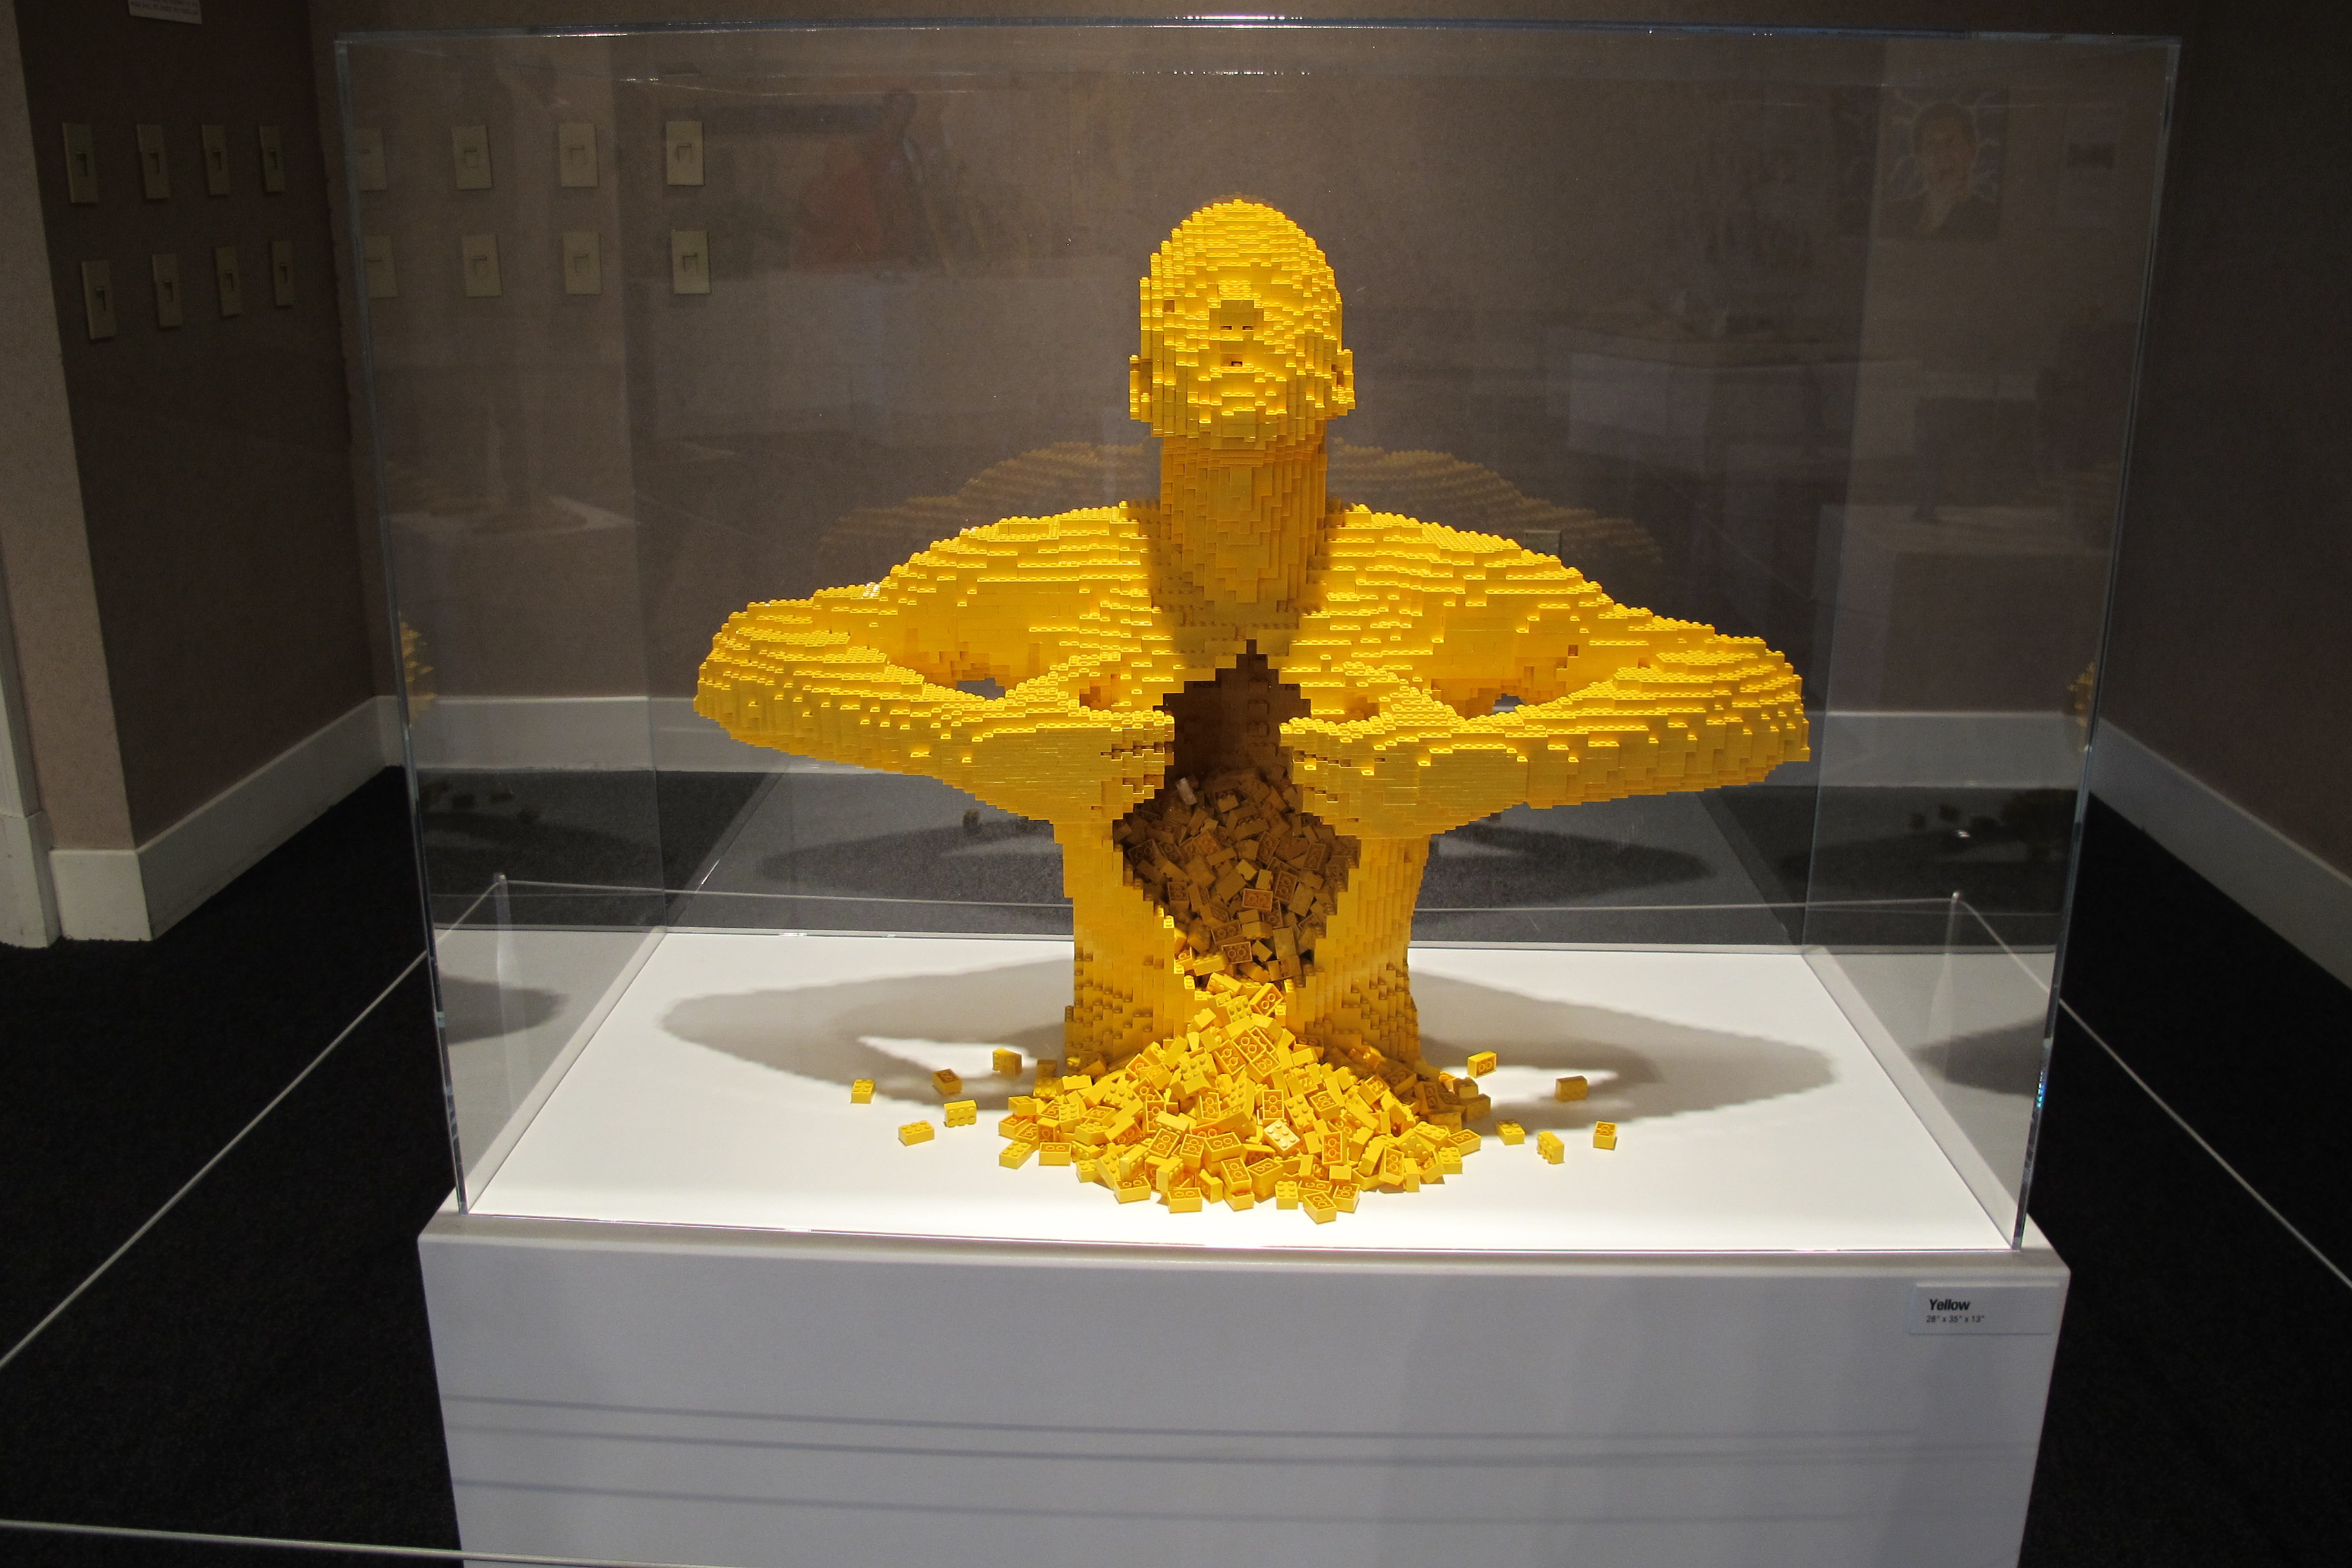 Lego art: sculptures by Nathan Sawaya